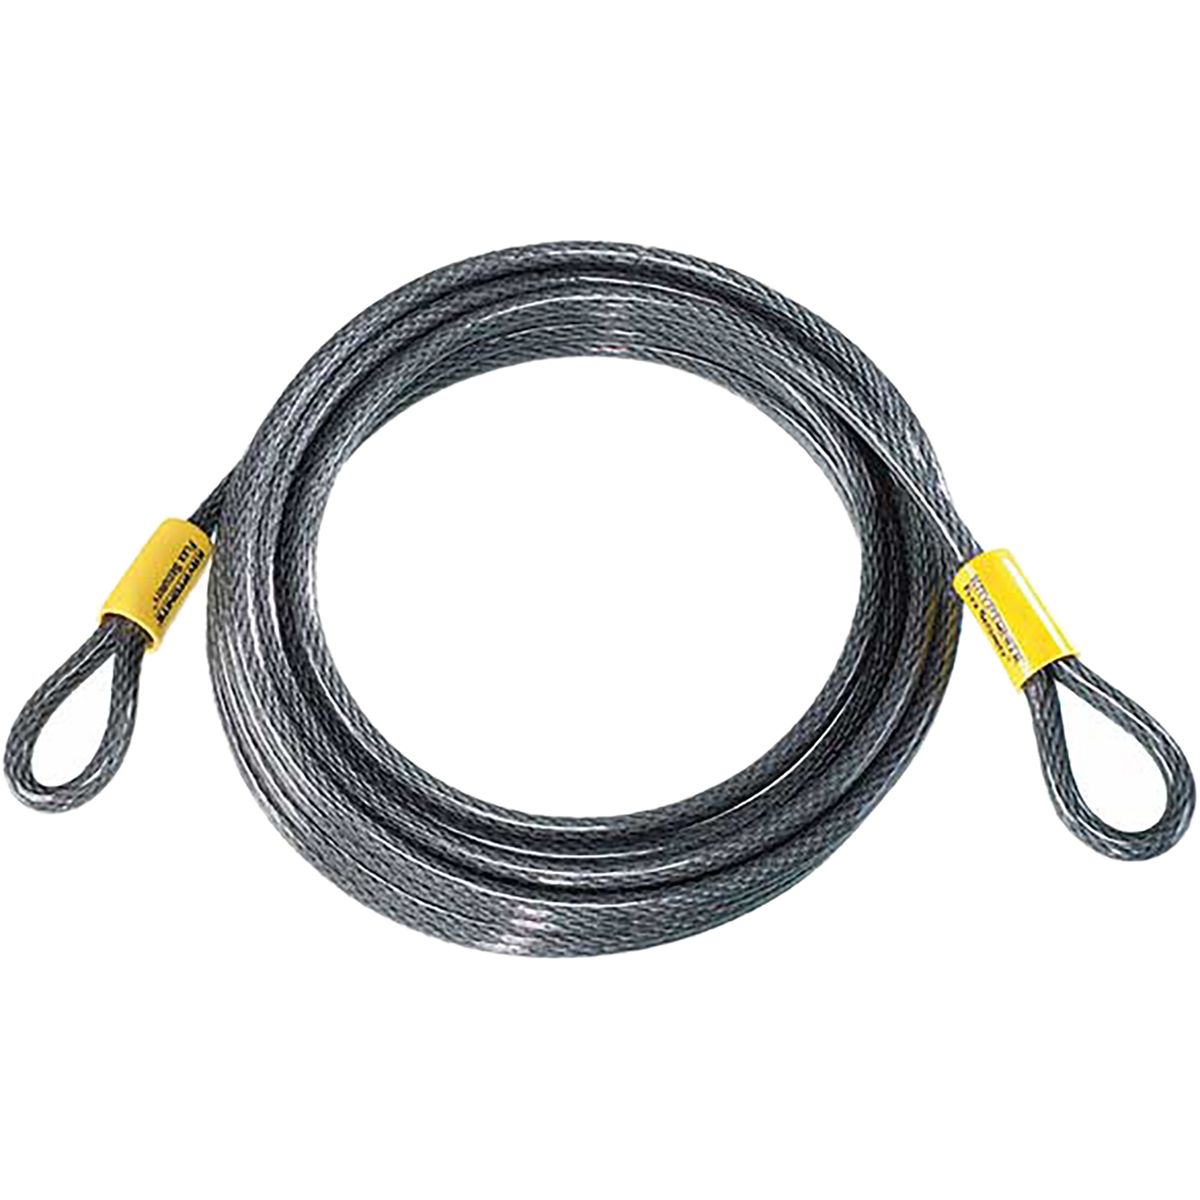 Kryptonite KryptoFlex 3010 Looped Cable Grey, 10mm x 914cm